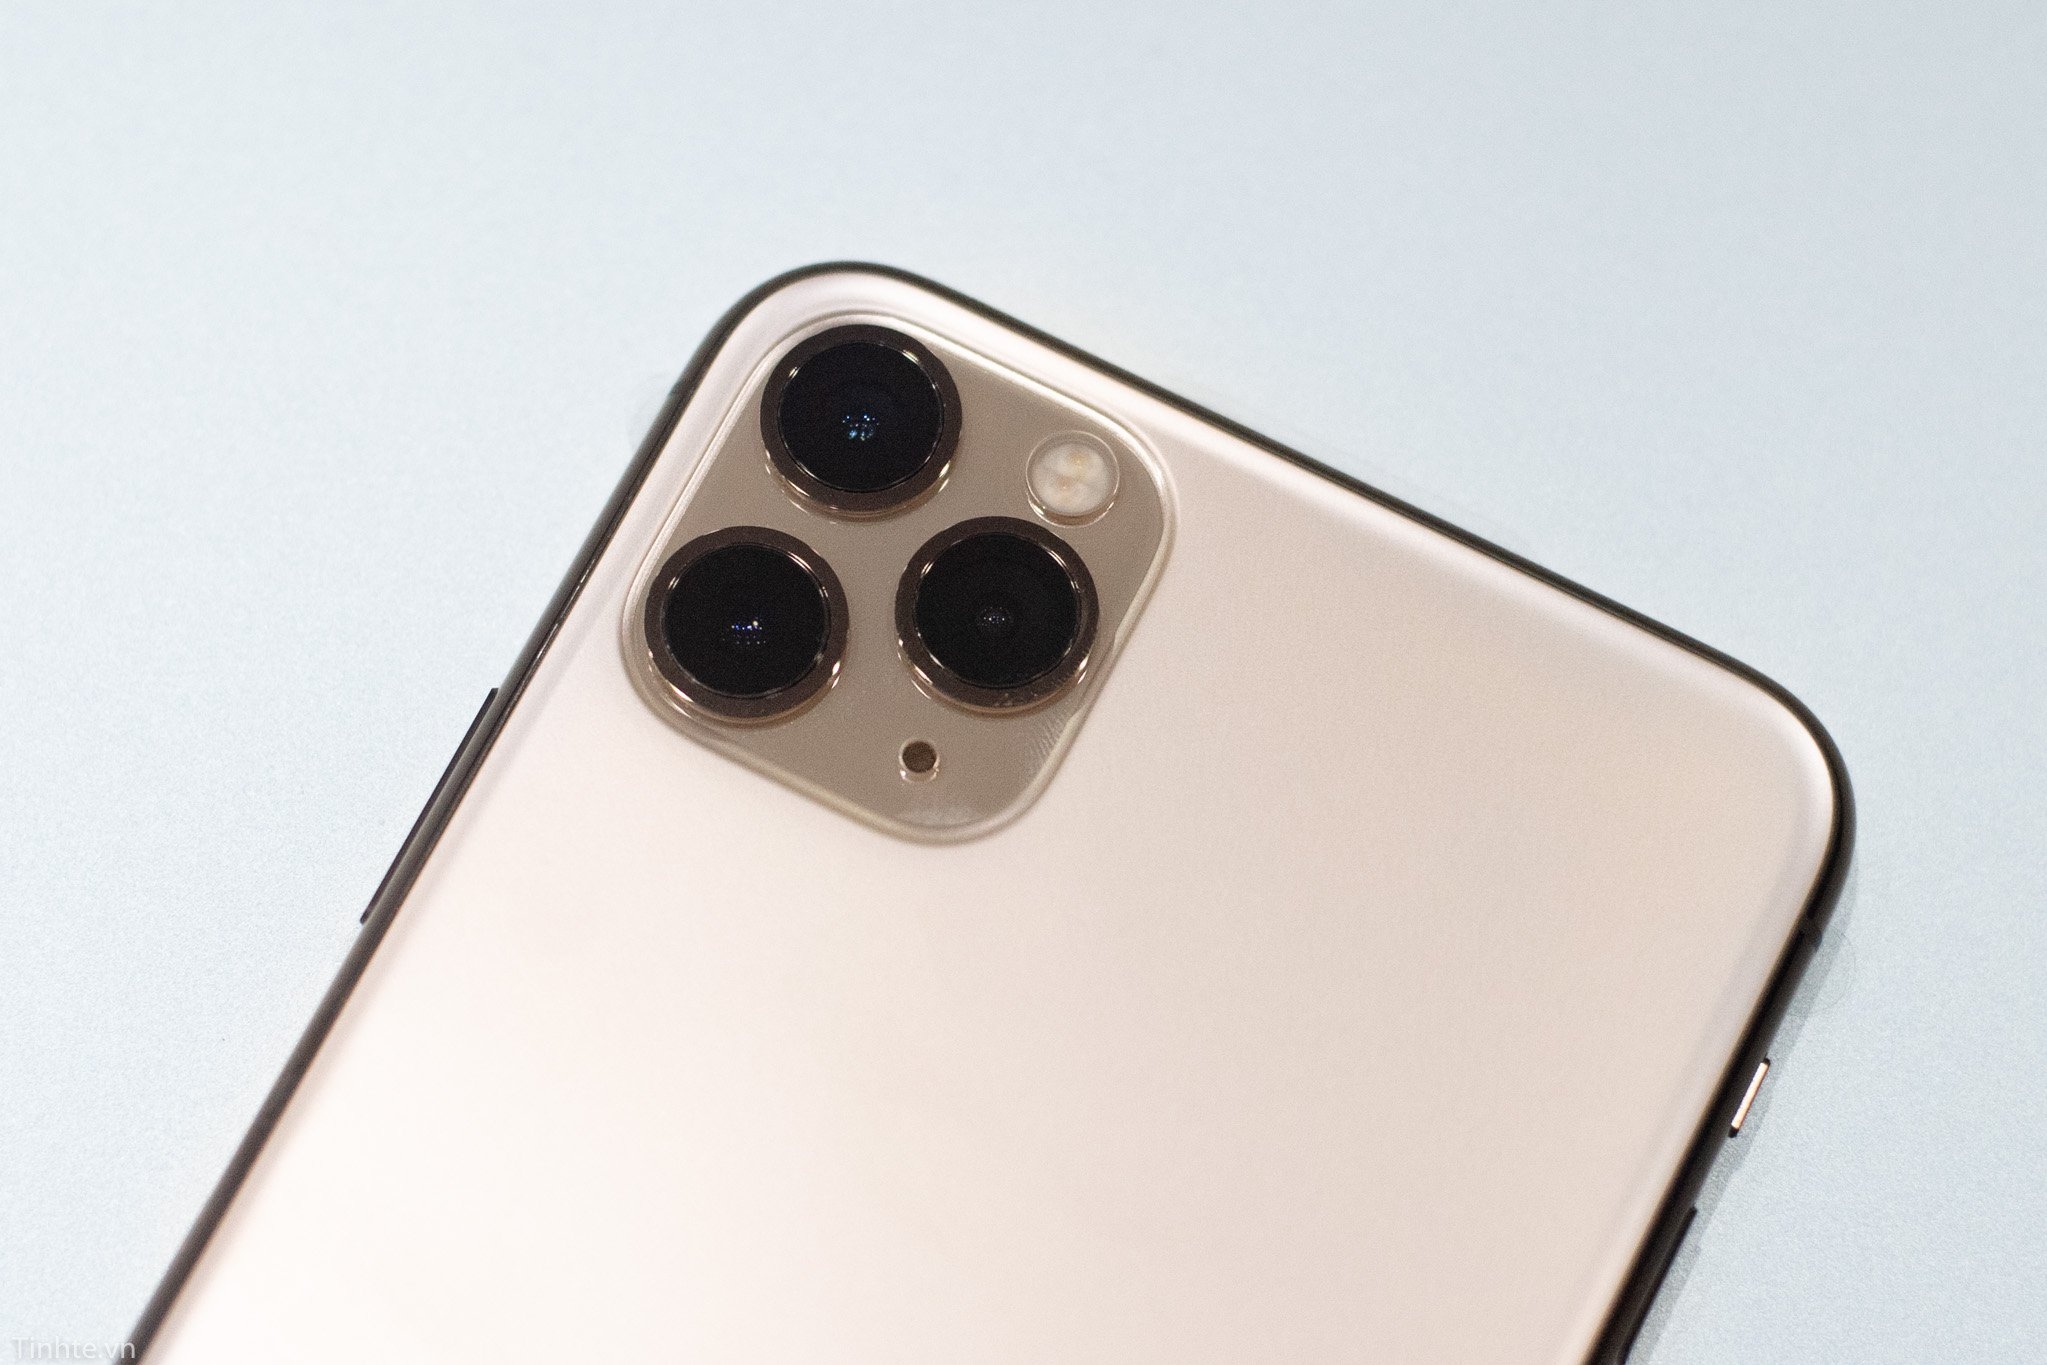 iPhone 11 Pro Max với mặt lưng kính nhám là một sản phẩm đẹp mắt và sang trọng. Bạn sẽ không chỉ được sở hữu một thiết bị có hiệu năng cao, mà còn là một thiết bị thiết kế đẳng cấp. Hãy xem hình ảnh liên quan đến từ khóa này để cảm nhận thêm vẻ đẹp độc đáo của chiếc điện thoại này.